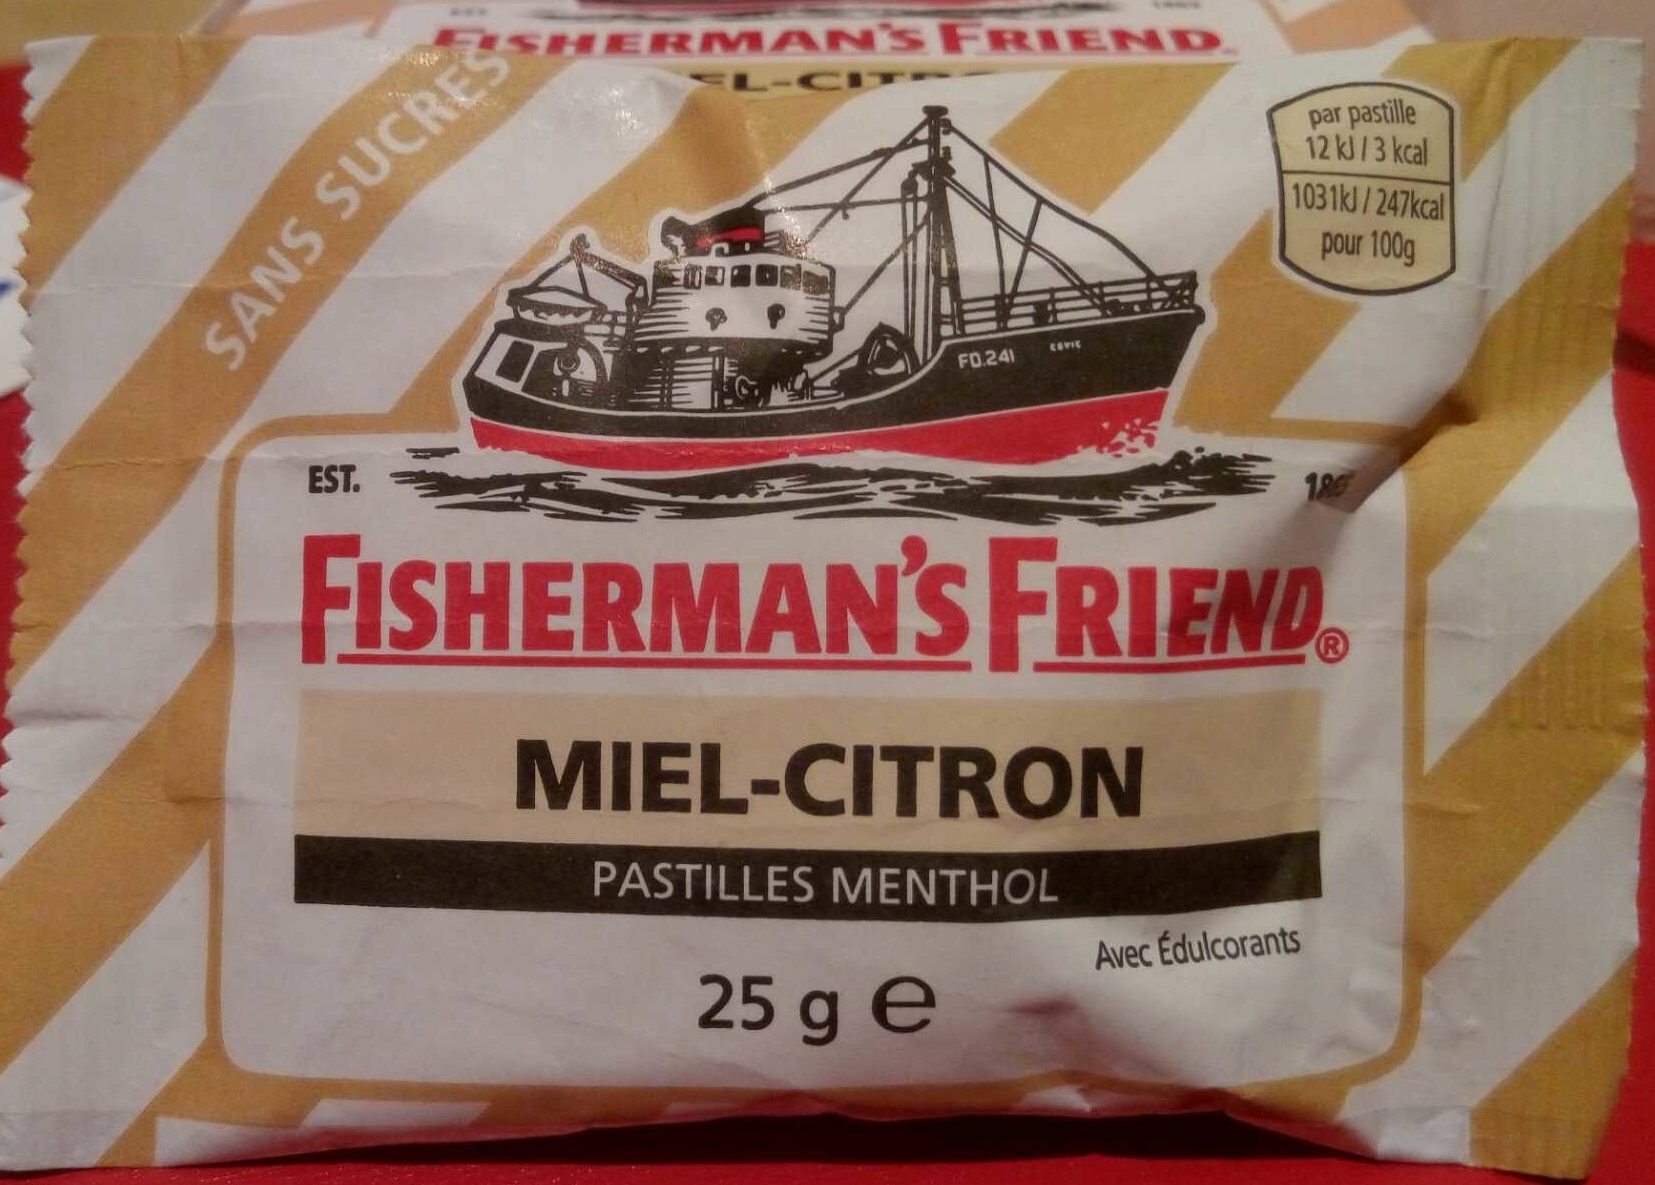 Fisherman's Friend Miel-Citron - Produkt - fr